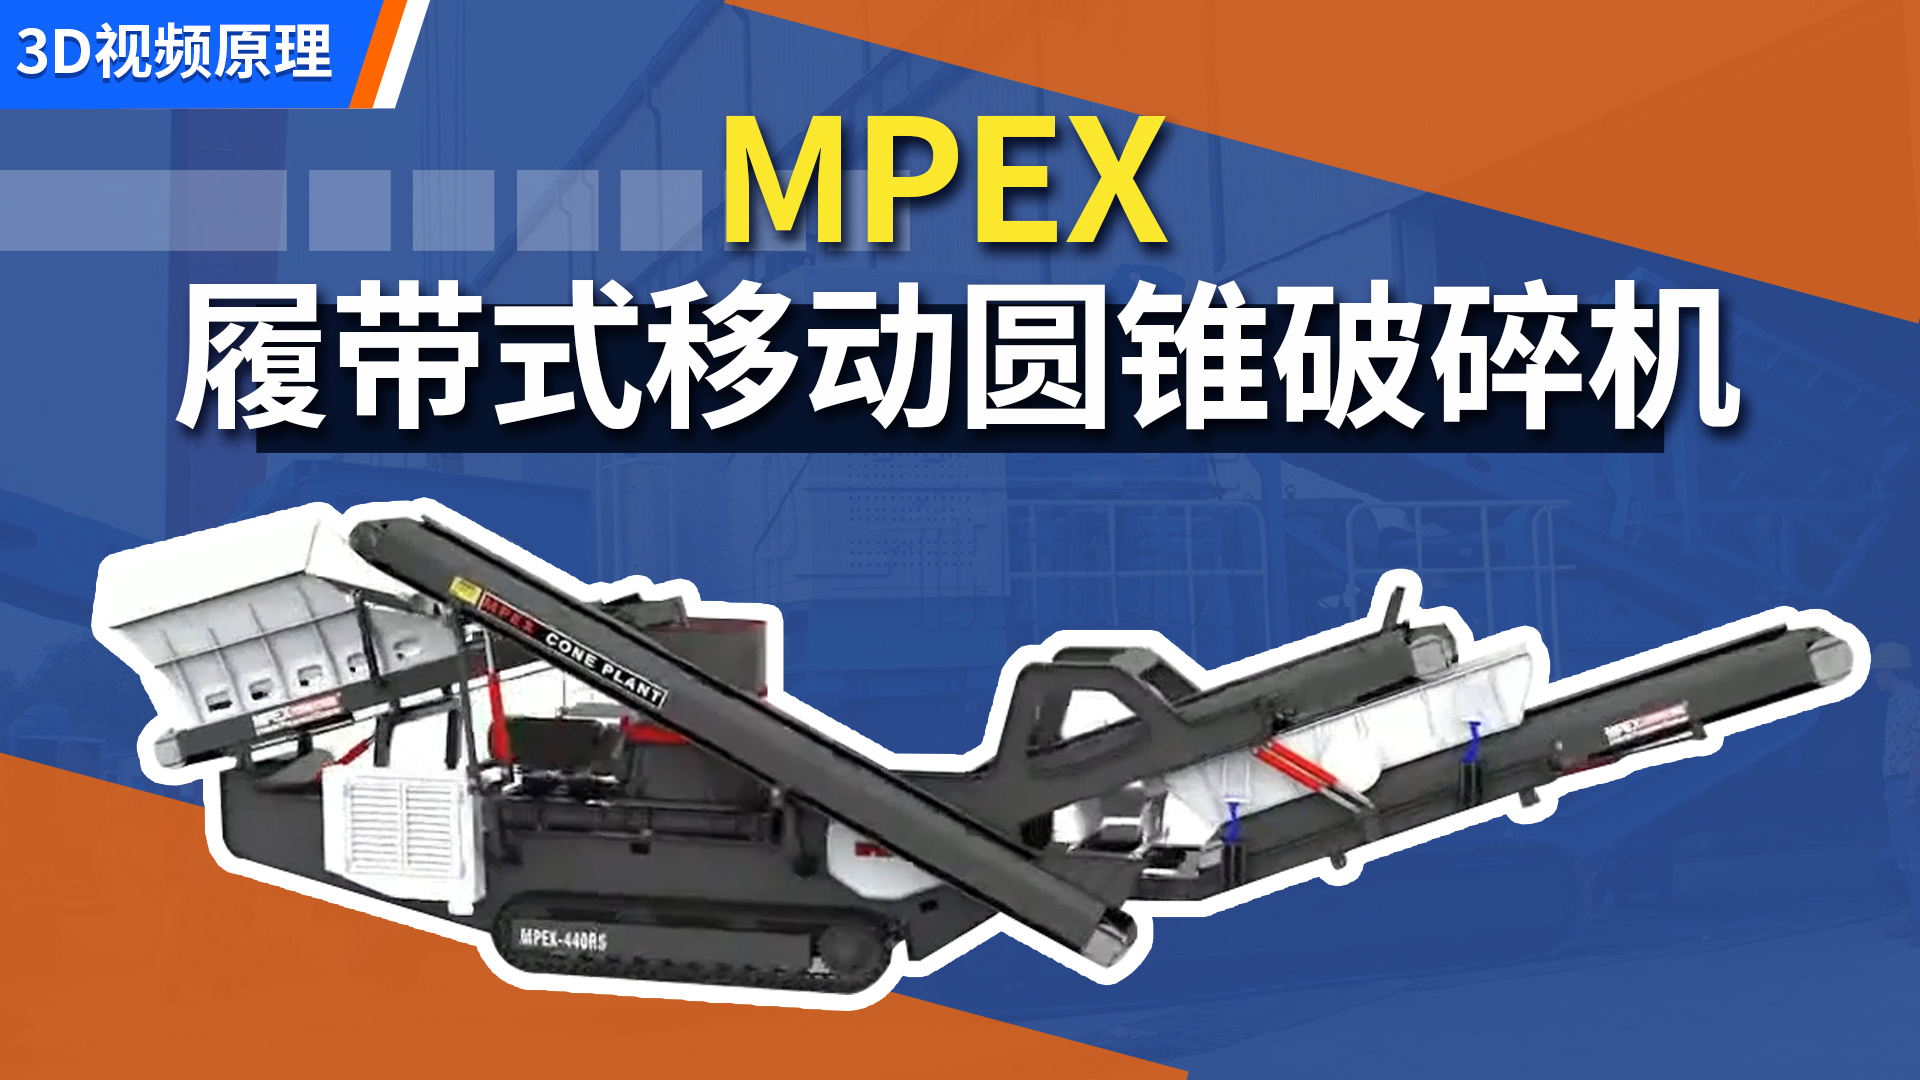 MPEX 履带式移动圆锥破碎机